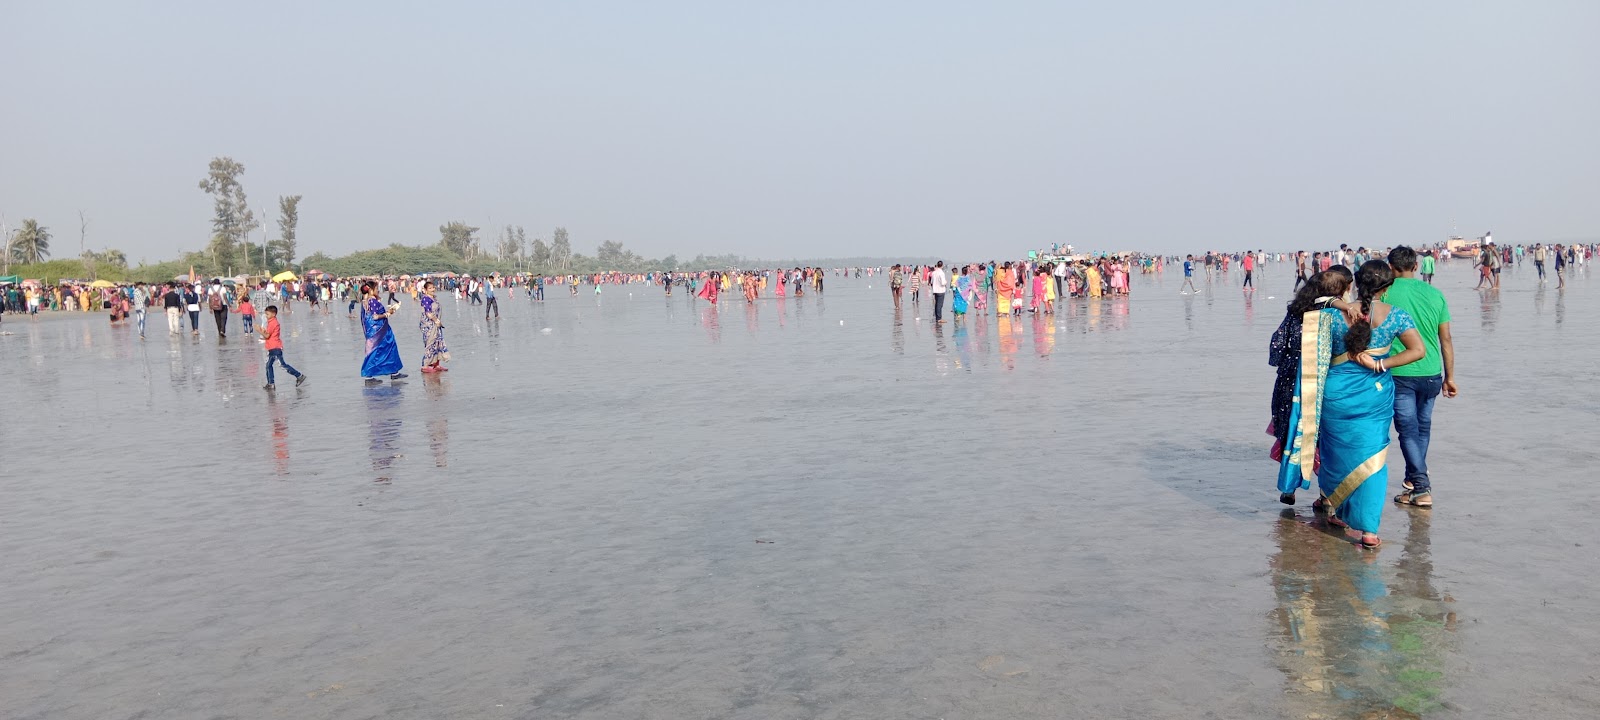 Φωτογραφία του Gobardhanpur Beach και η εγκατάσταση